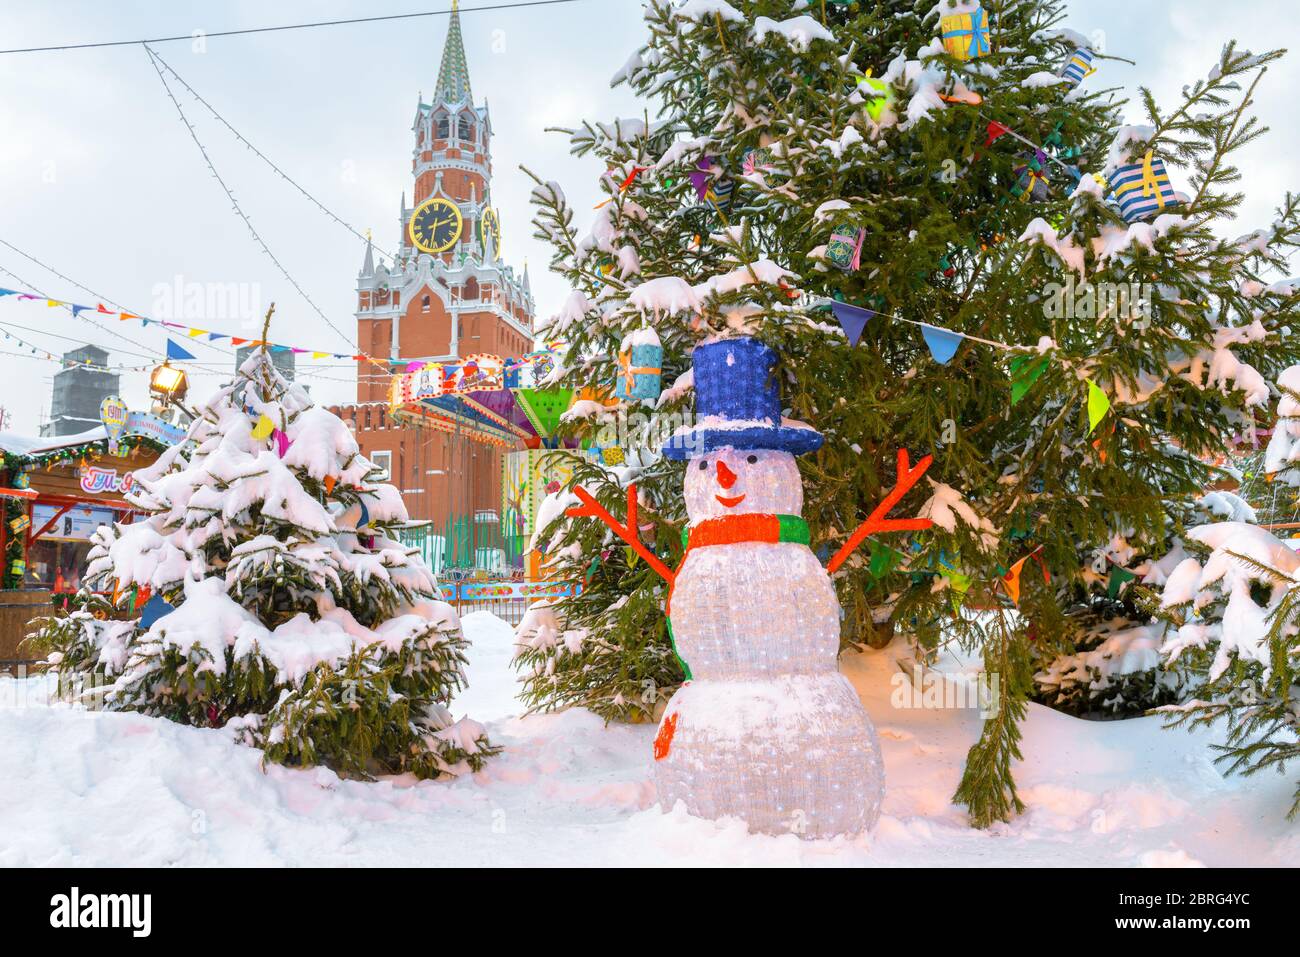 Moscou, Russie - 5 février 2018 : décorations de Noël près du Kremlin de Moscou en hiver. Bonhomme de neige près de l'arbre de Noël sur la place Rouge festive. Mo. Centrale Banque D'Images